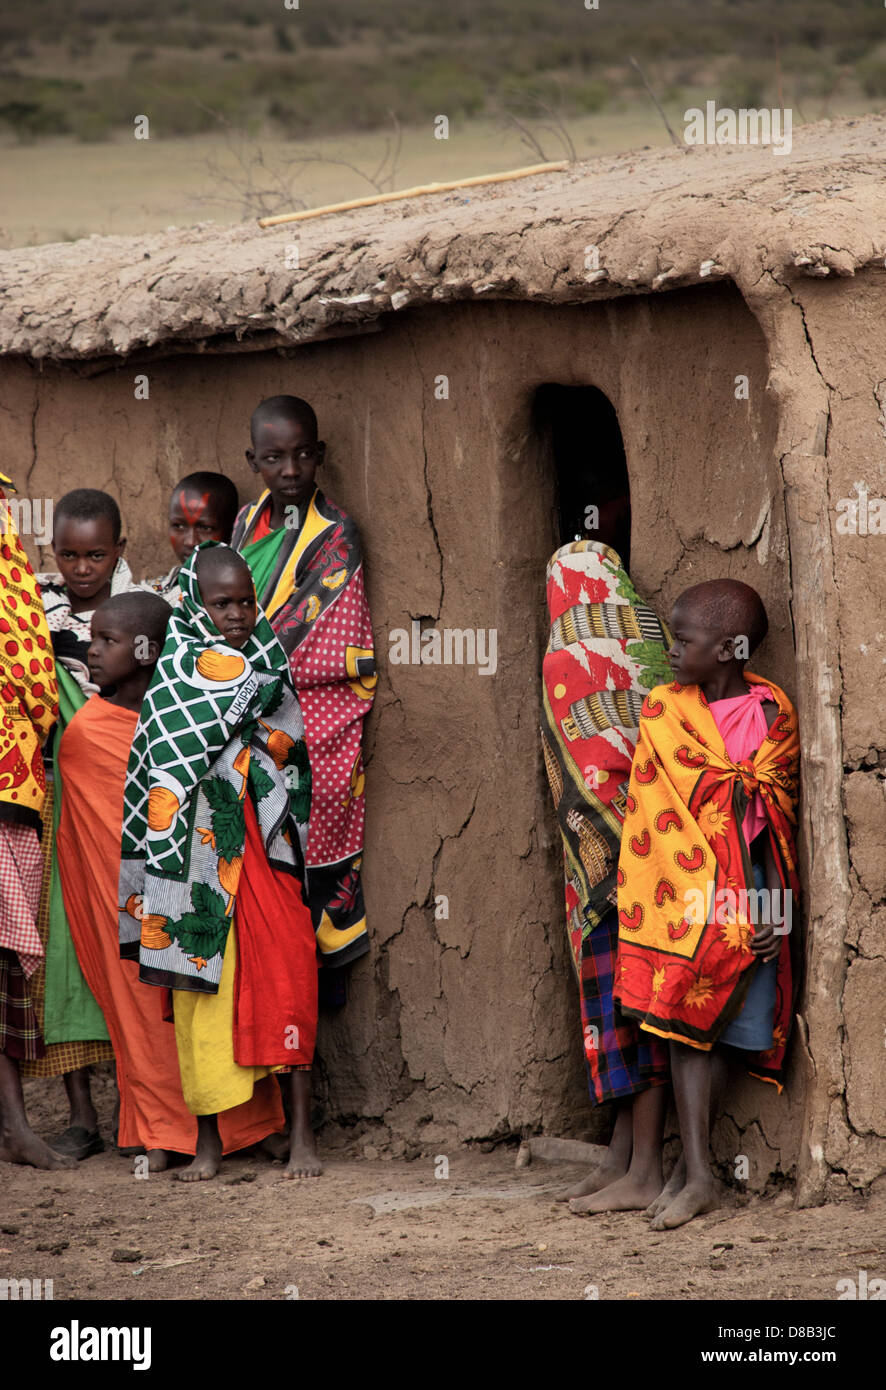 Enfants Masai, portant des vêtements traditionnels, près d'une hutte de  terre dans un village de la Masai Mara, Kenya, Afrique Photo Stock - Alamy